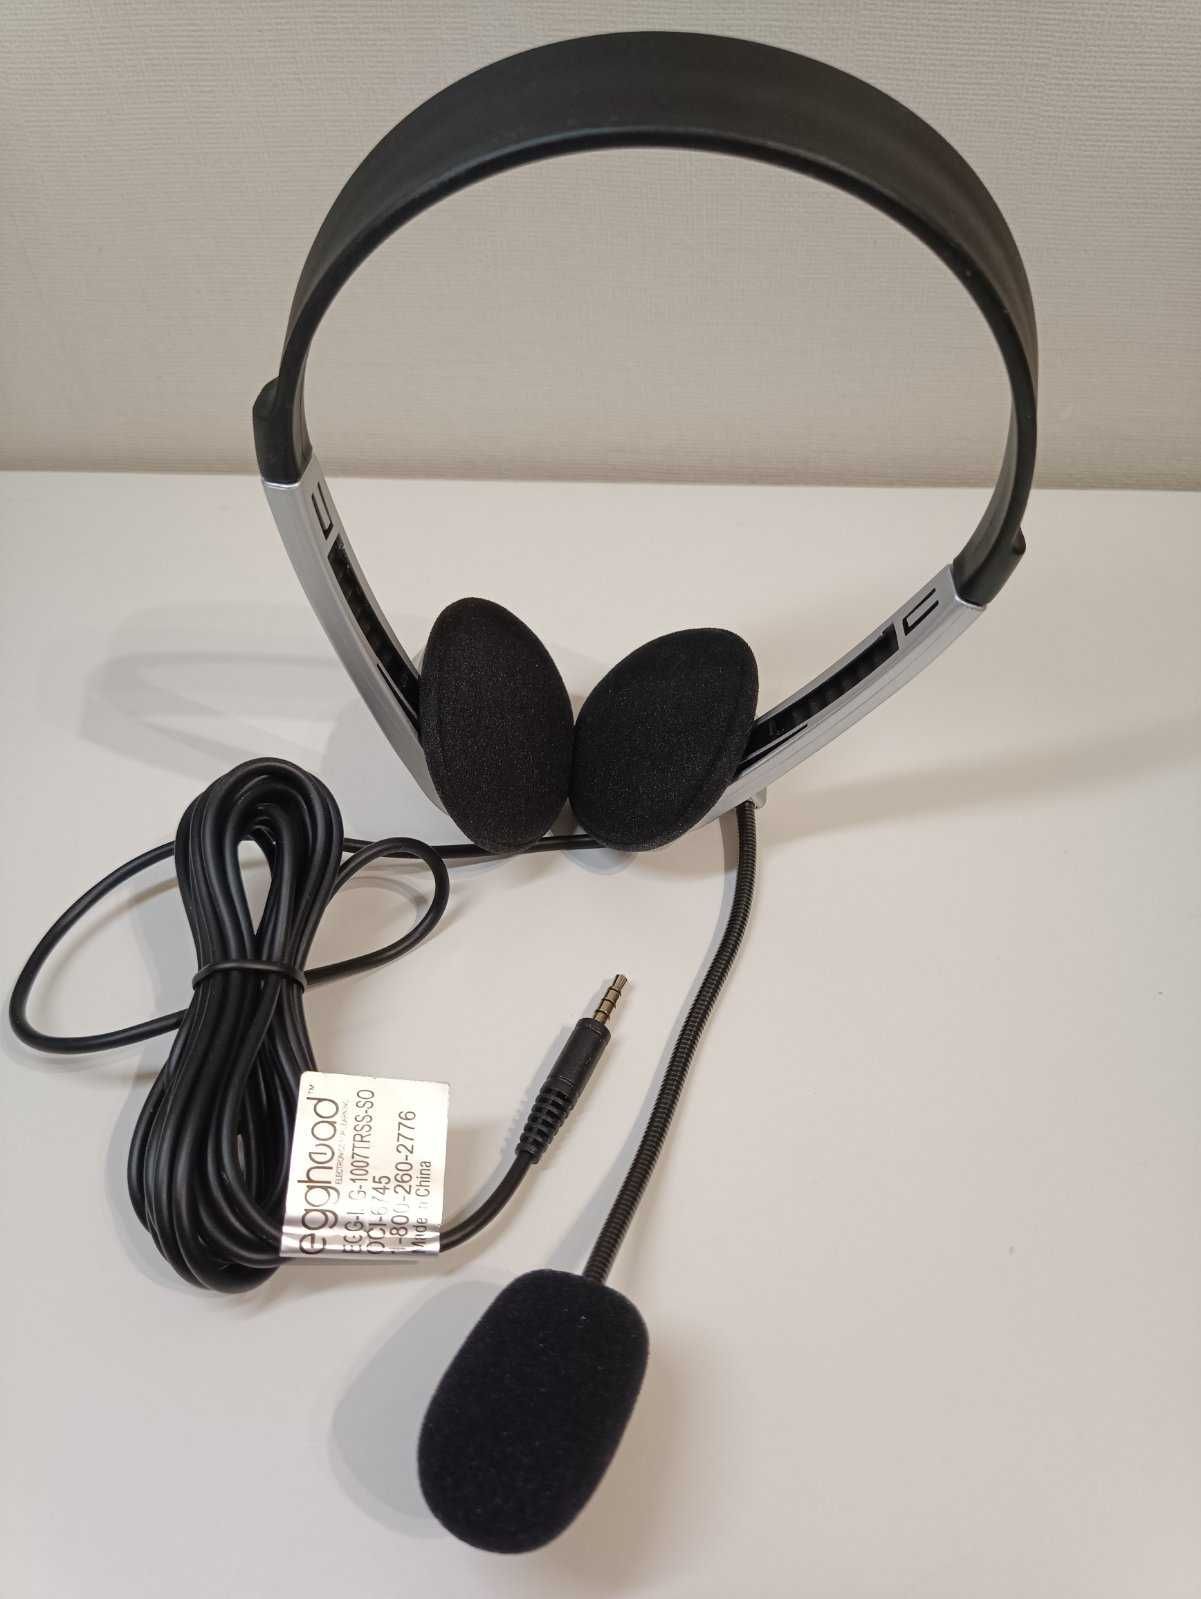 Новые наушники Egghead с микрофоном шнуром длиной 2,5 м mini-jack